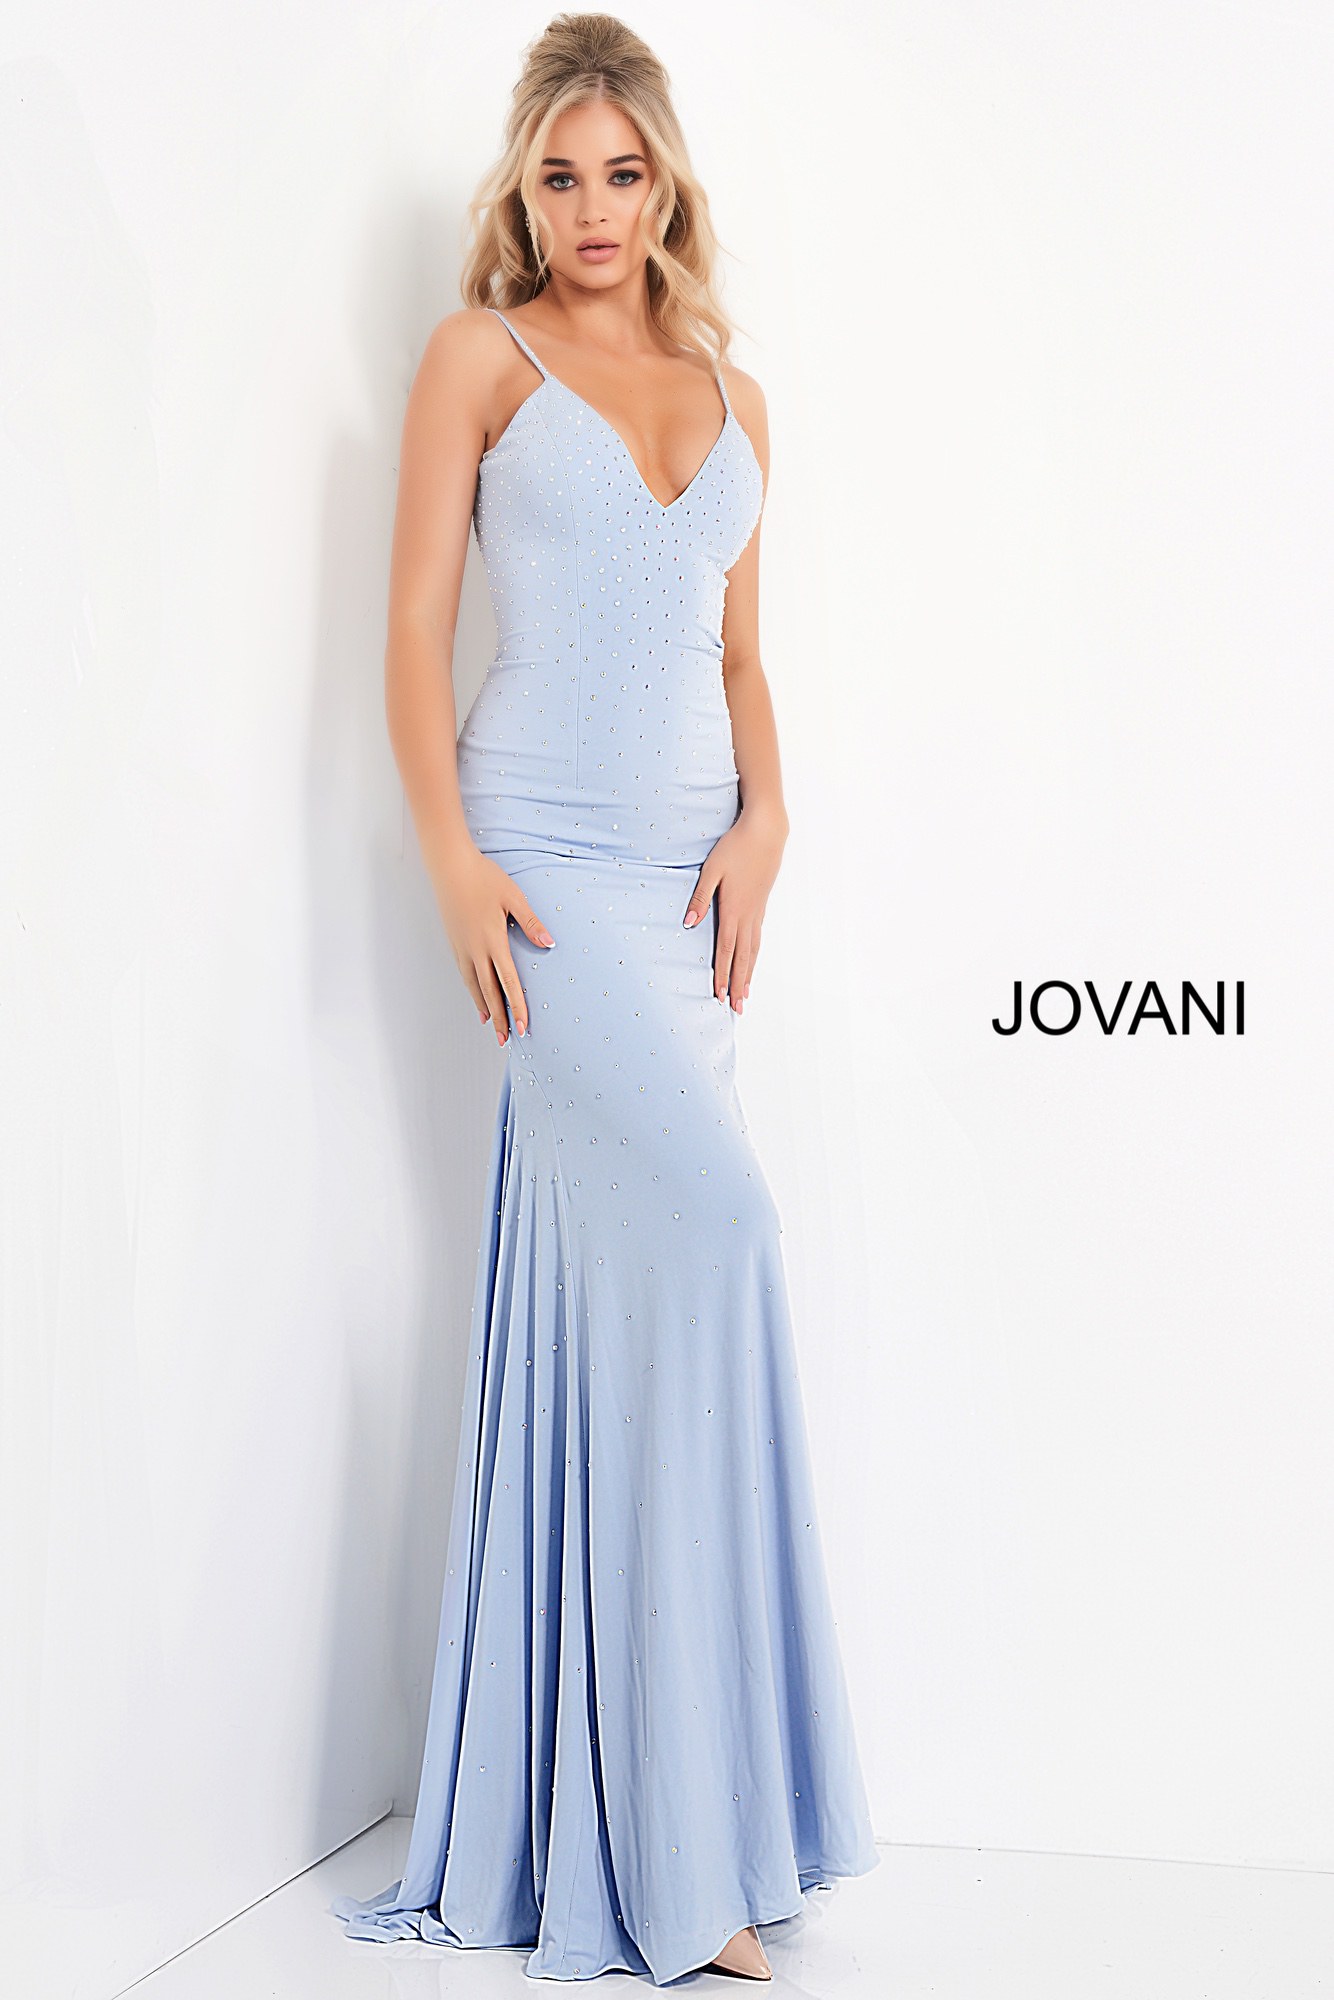 Jovani 00625 | Hot Pink Embellished Tie Back Prom Dress